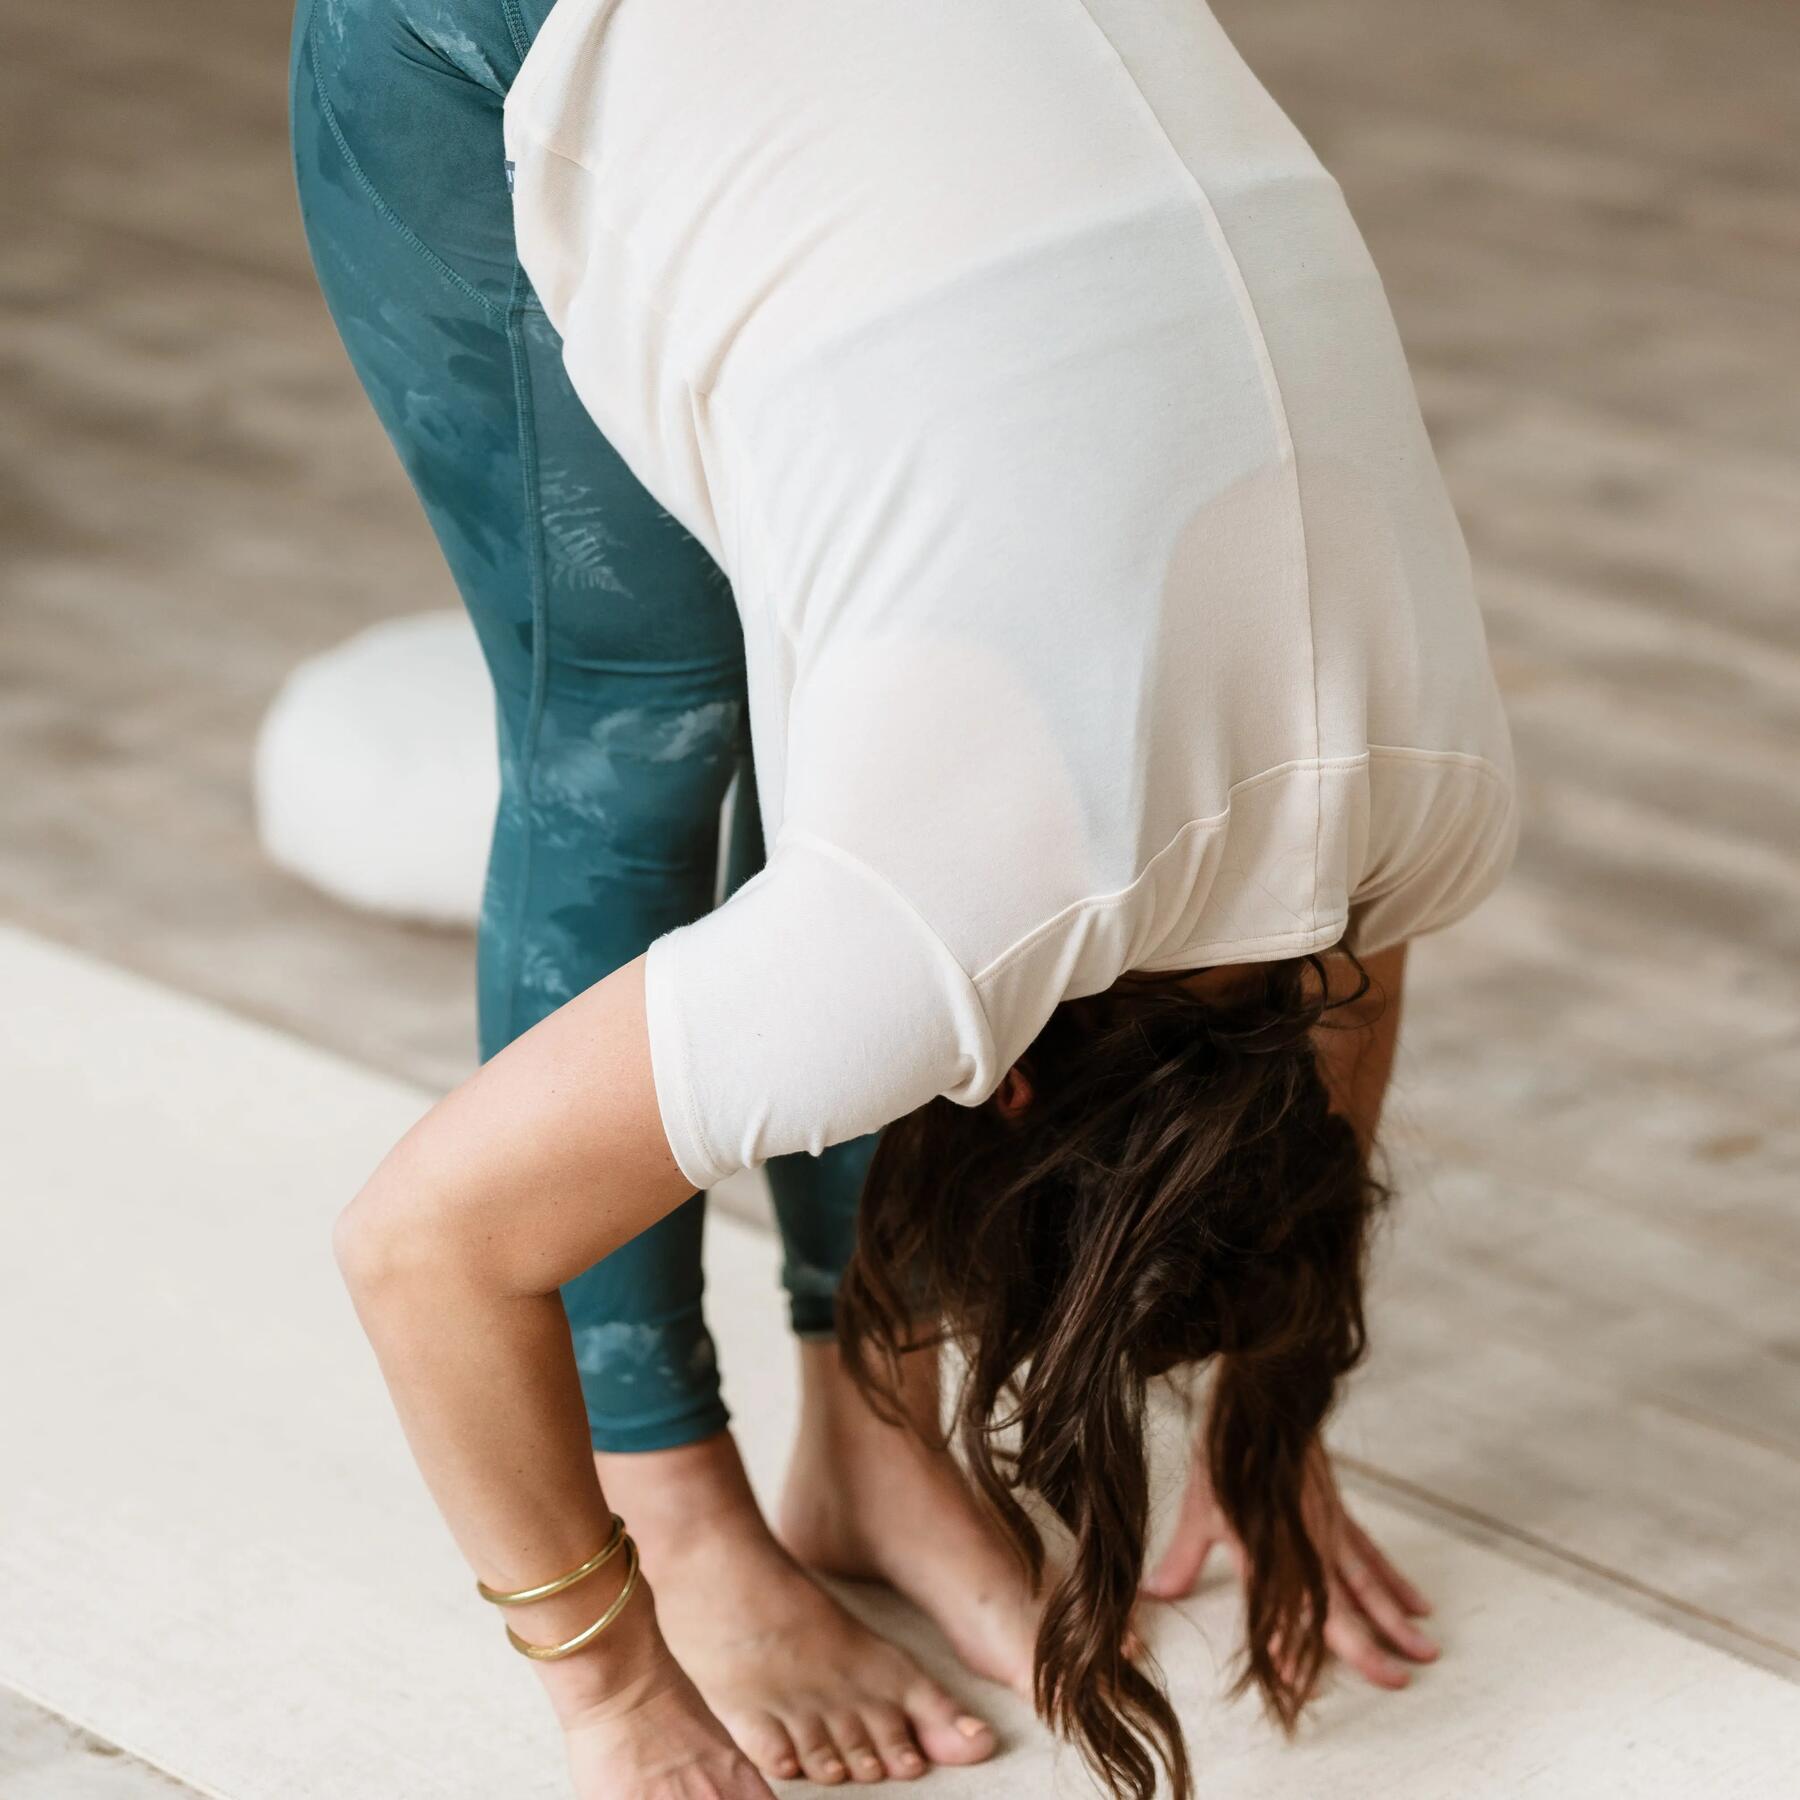 Découvrez le hatha yoga, le yoga traditionnel